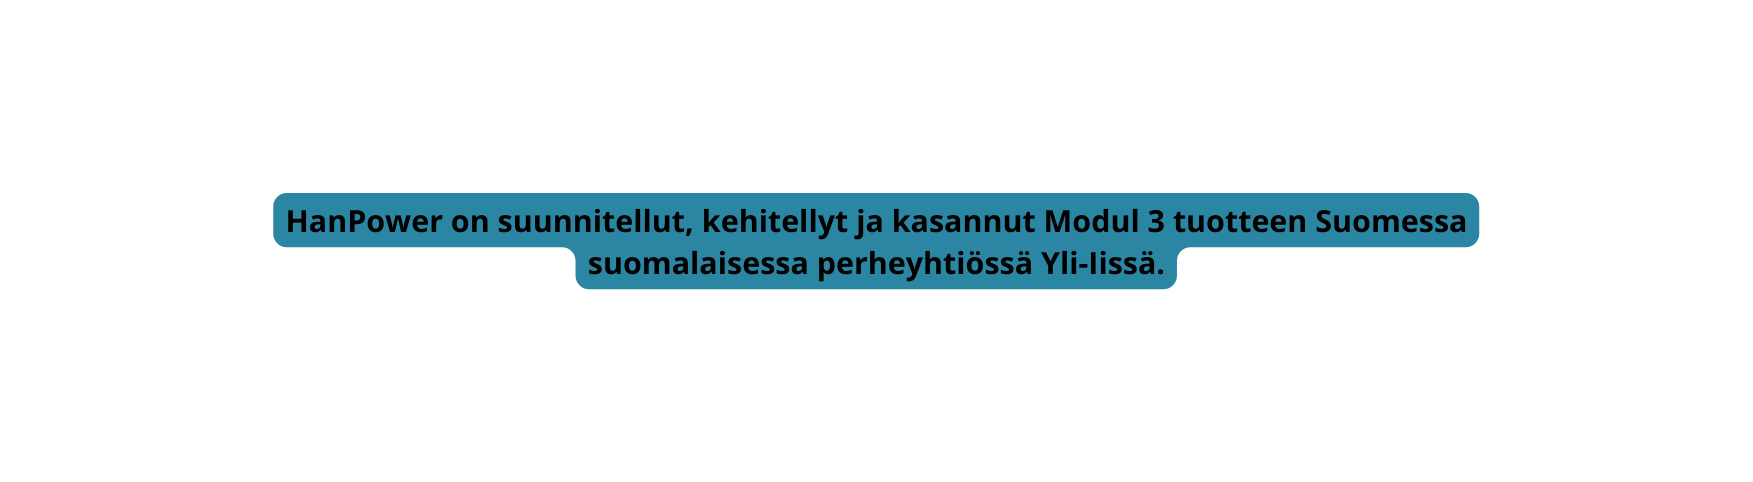 HanPower on suunnitellut kehitellyt ja kasannut Modul 3 tuotteen Suomessa suomalaisessa perheyhtiössä Yli Iissä